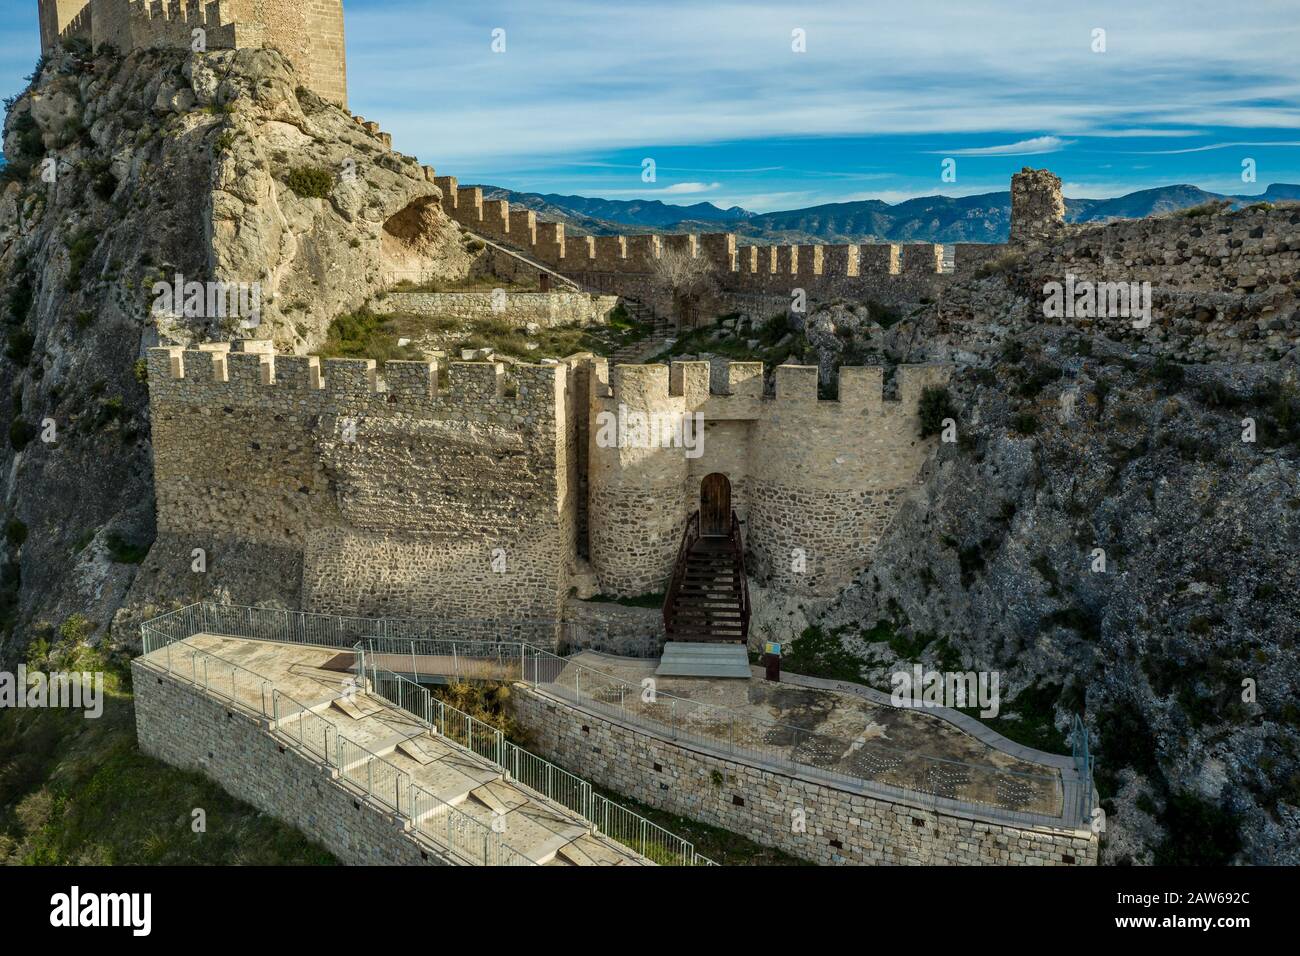 Veduta aerea pomeridiana del cancello del castello di Sax protetto da due torri semi-circolari che custodiscono l'ingresso del cortile inferiore bailey in Spagna Foto Stock